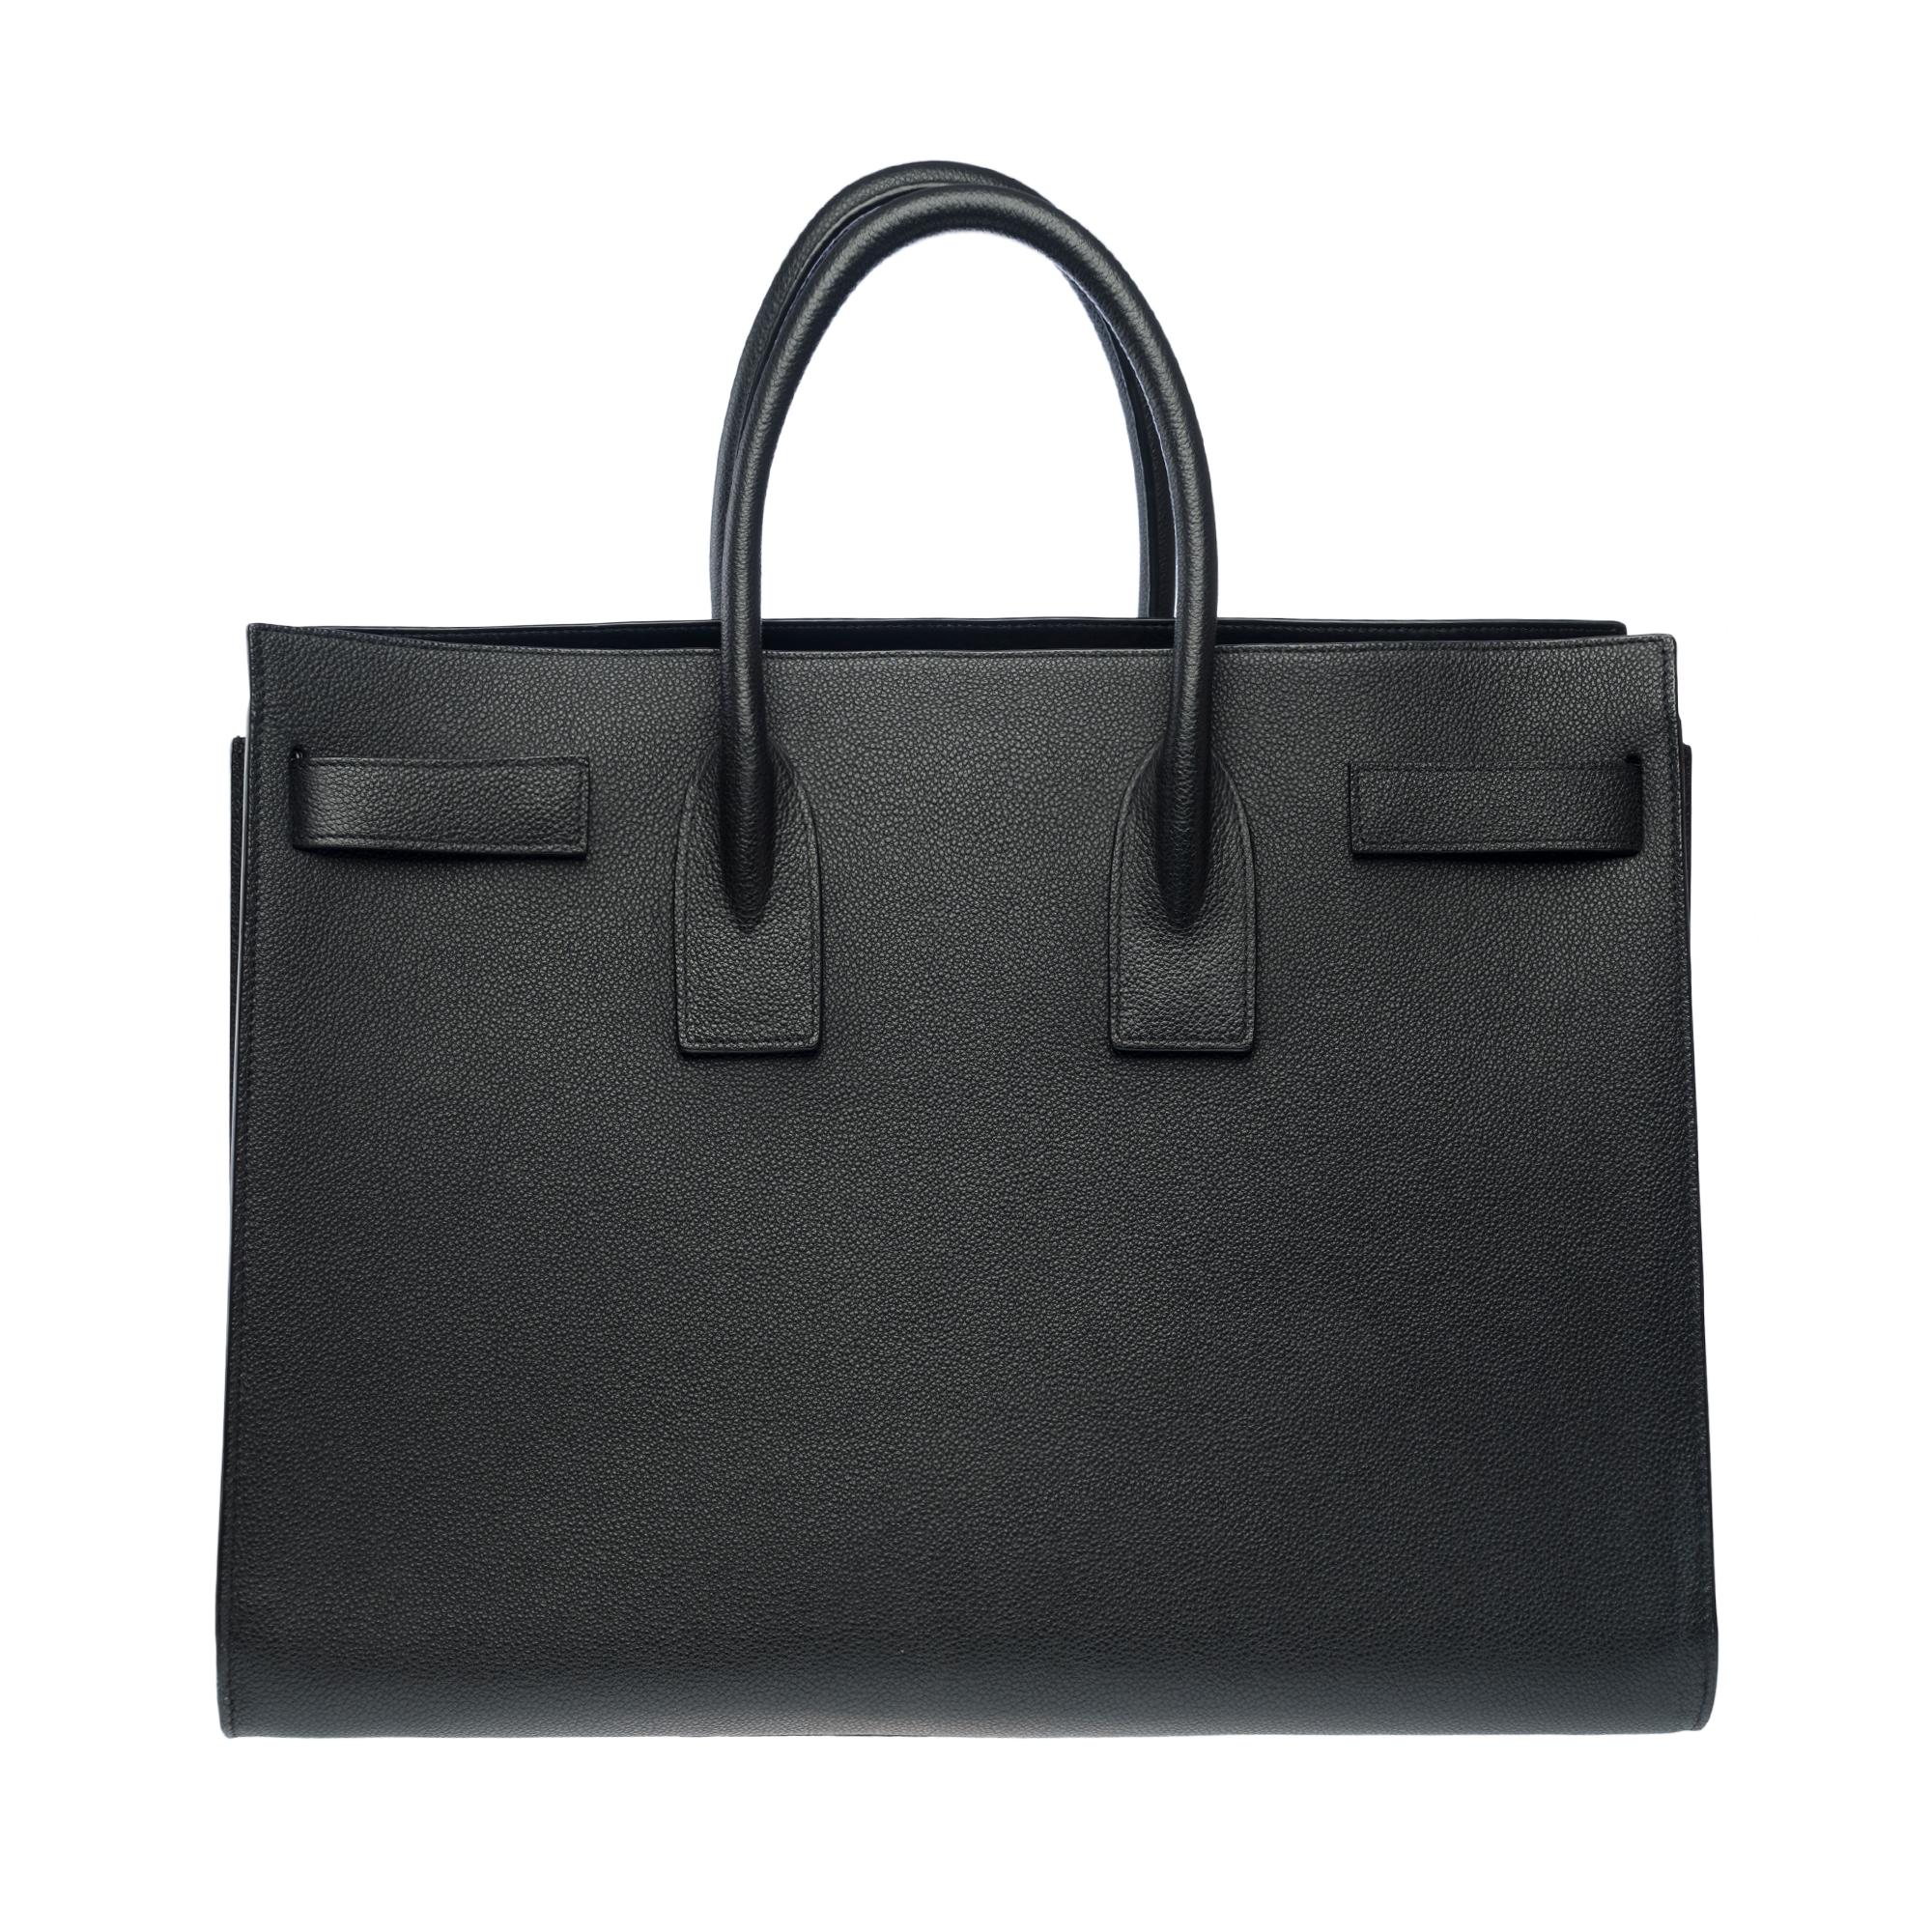 Saint Laurent Sac de Jour Large size handbag strap in black grained leather In Good Condition In Paris, IDF